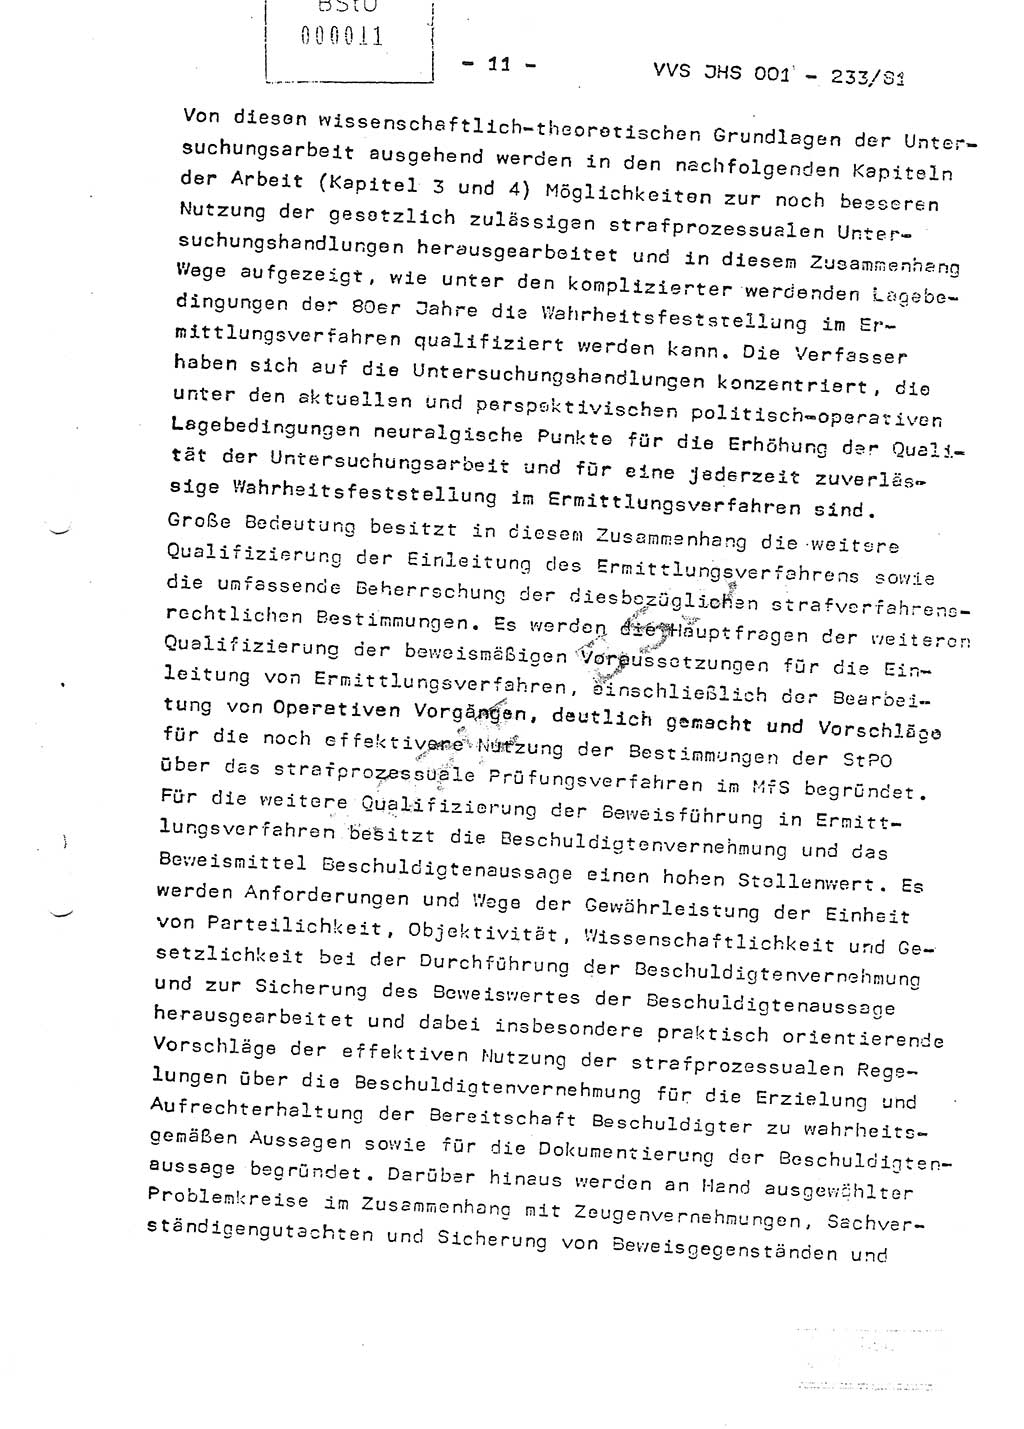 Dissertation Oberstleutnant Horst Zank (JHS), Oberstleutnant Dr. Karl-Heinz Knoblauch (JHS), Oberstleutnant Gustav-Adolf Kowalewski (HA Ⅸ), Oberstleutnant Wolfgang Plötner (HA Ⅸ), Ministerium für Staatssicherheit (MfS) [Deutsche Demokratische Republik (DDR)], Juristische Hochschule (JHS), Vertrauliche Verschlußsache (VVS) o001-233/81, Potsdam 1981, Blatt 11 (Diss. MfS DDR JHS VVS o001-233/81 1981, Bl. 11)